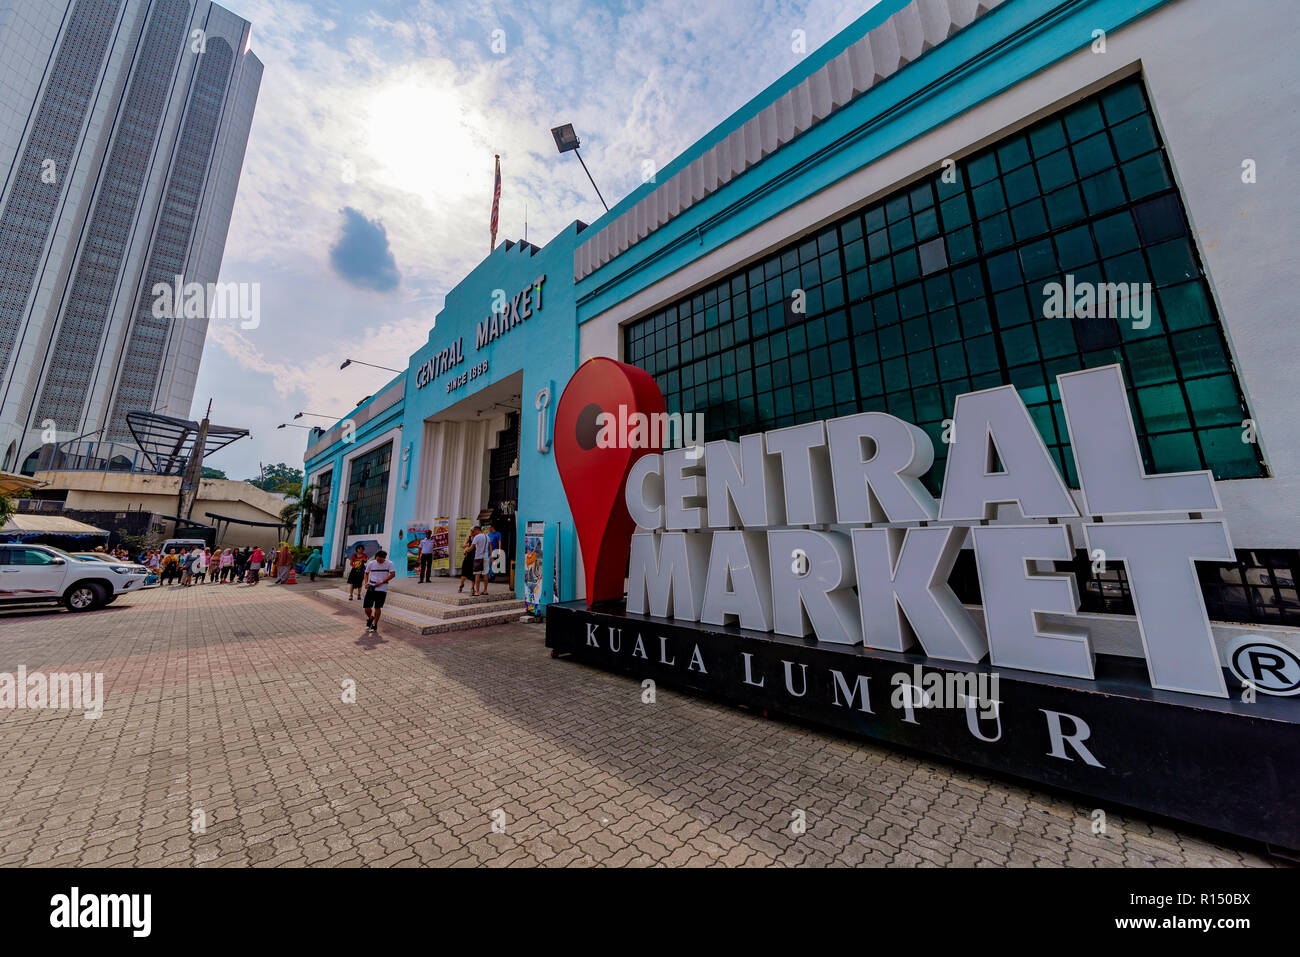 KUALA LUMPUR, Malesia - 21 Luglio: Questo è il mercato centrale, è un luogo famoso per lo shopping nella zona del centro cittadino sulla luglio 21, 2018 a Kuala Lumpur Foto Stock